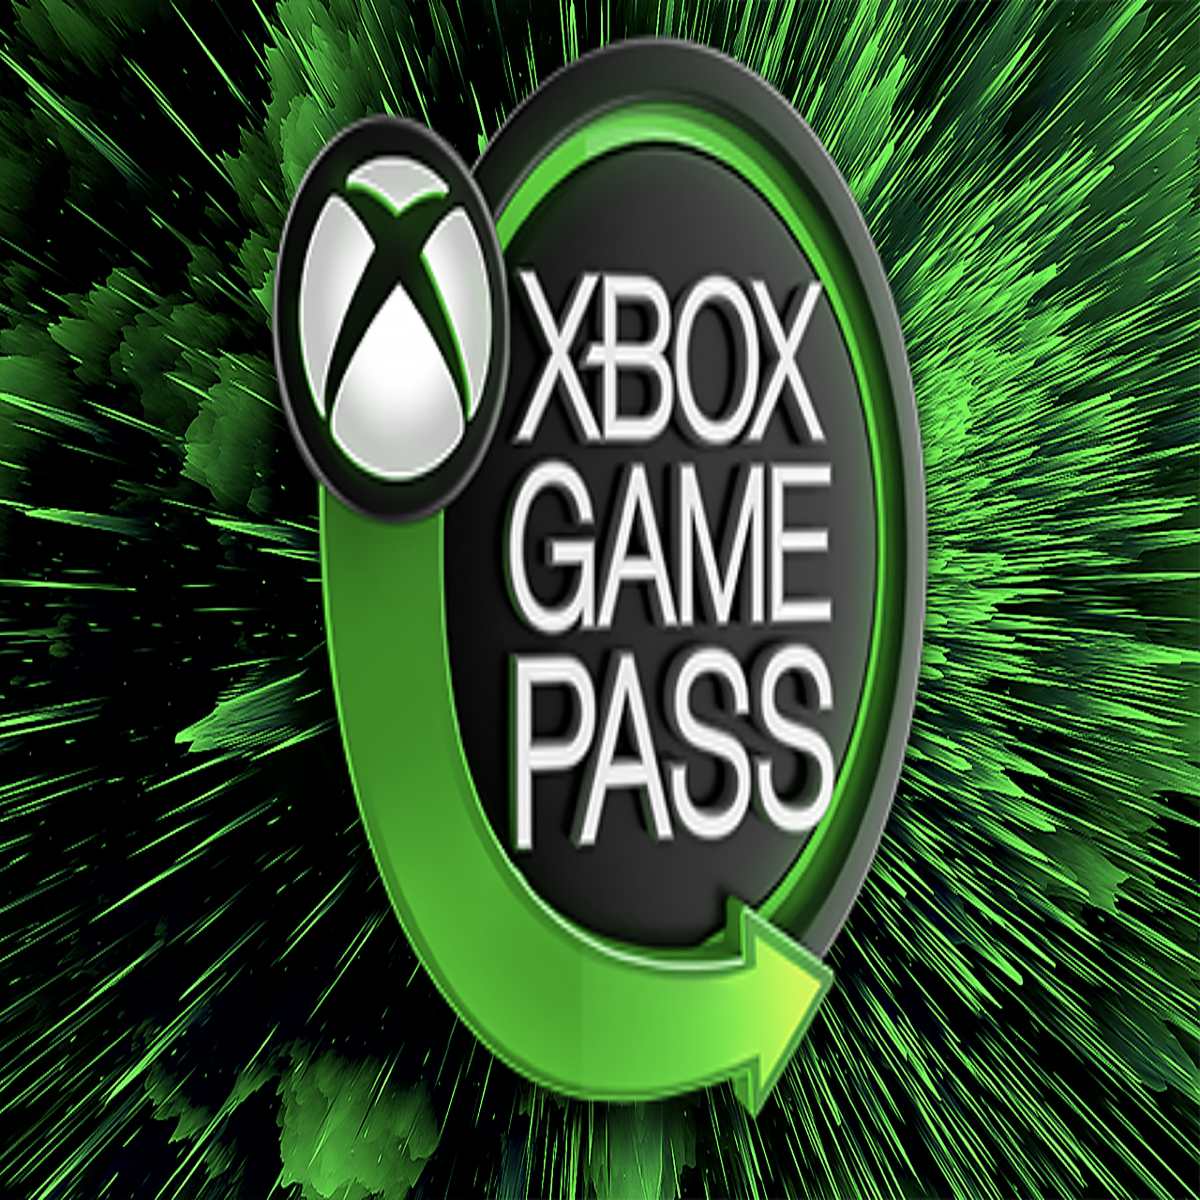 Microsoft anuncia o plano Xbox Game Pass Amigos & Família - Outer Space